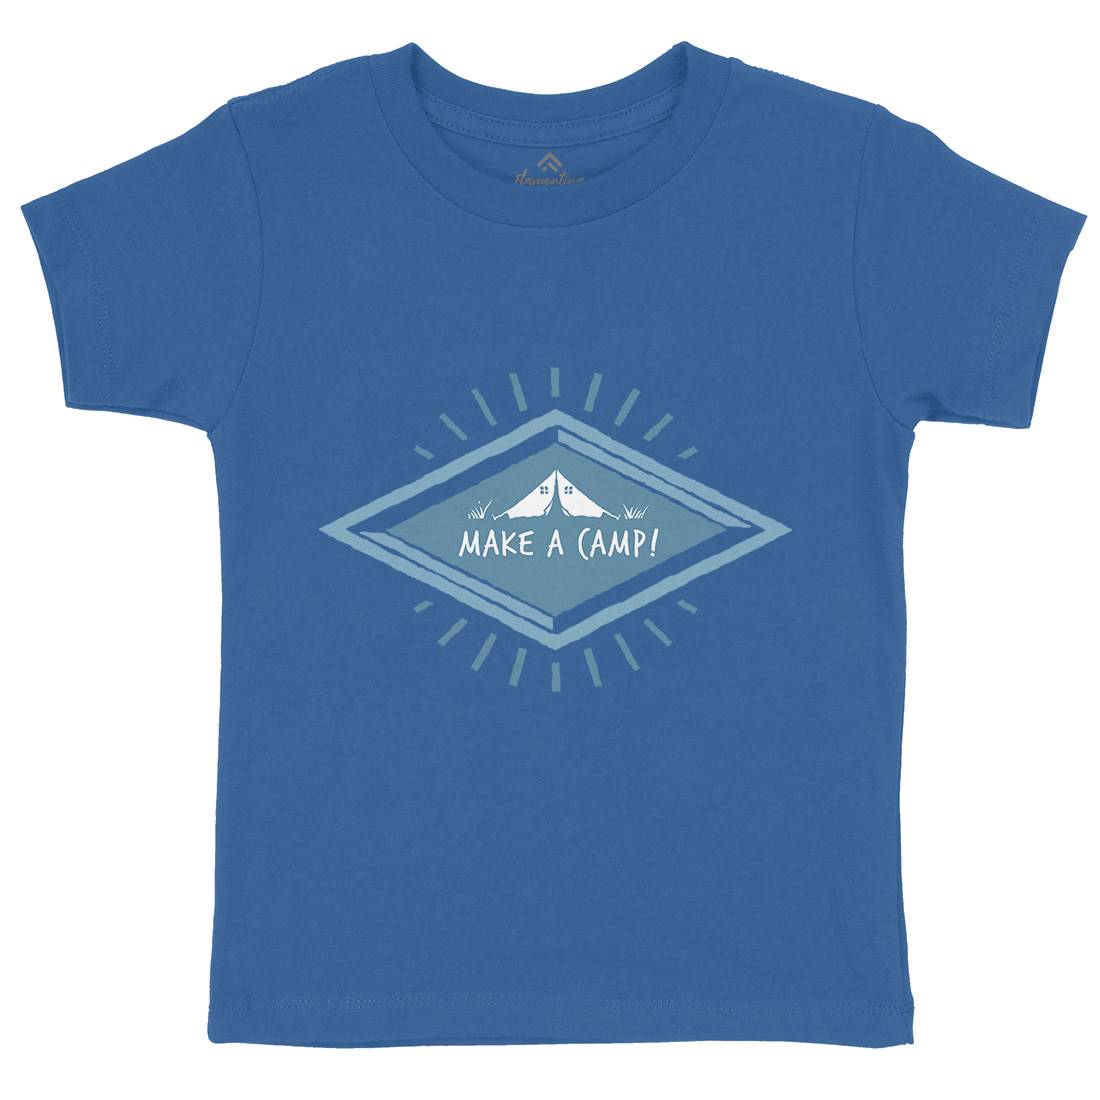 Make A Camp Kids Crew Neck T-Shirt Nature A341